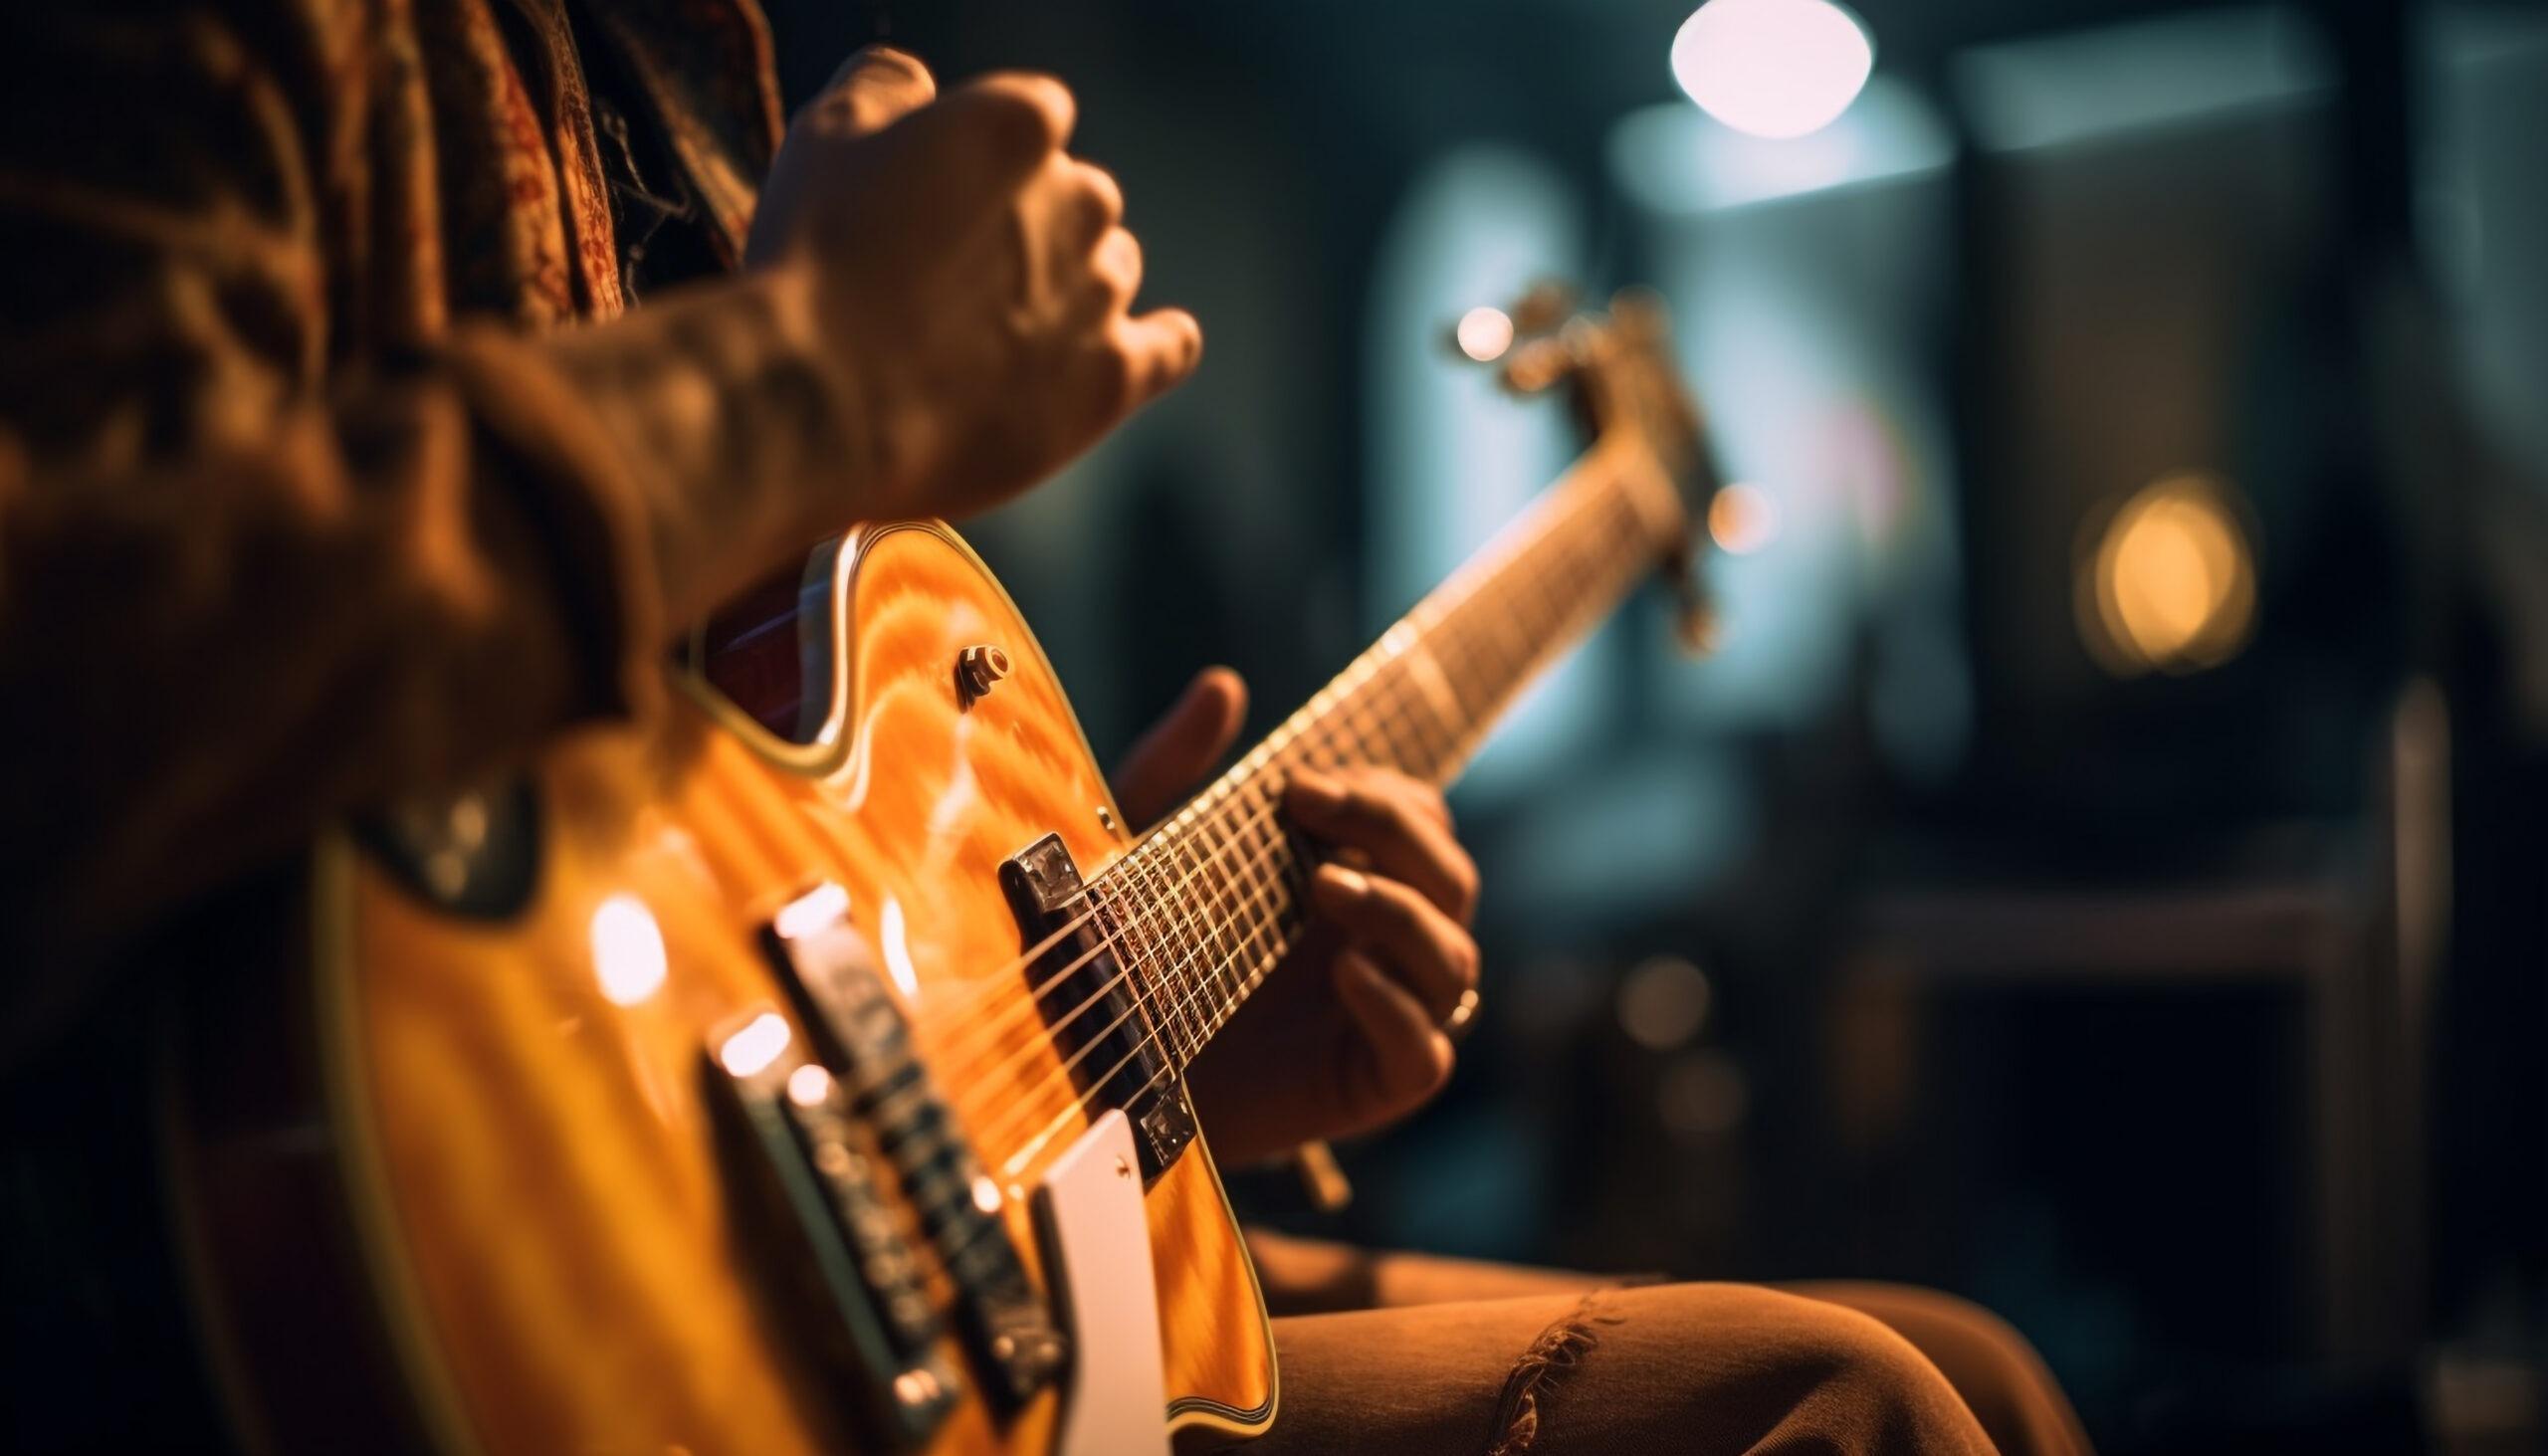 Nova Geração de Talentos no Festival Brasil Jamaica: Concurso de Música no Shopping Mestre Álvaro